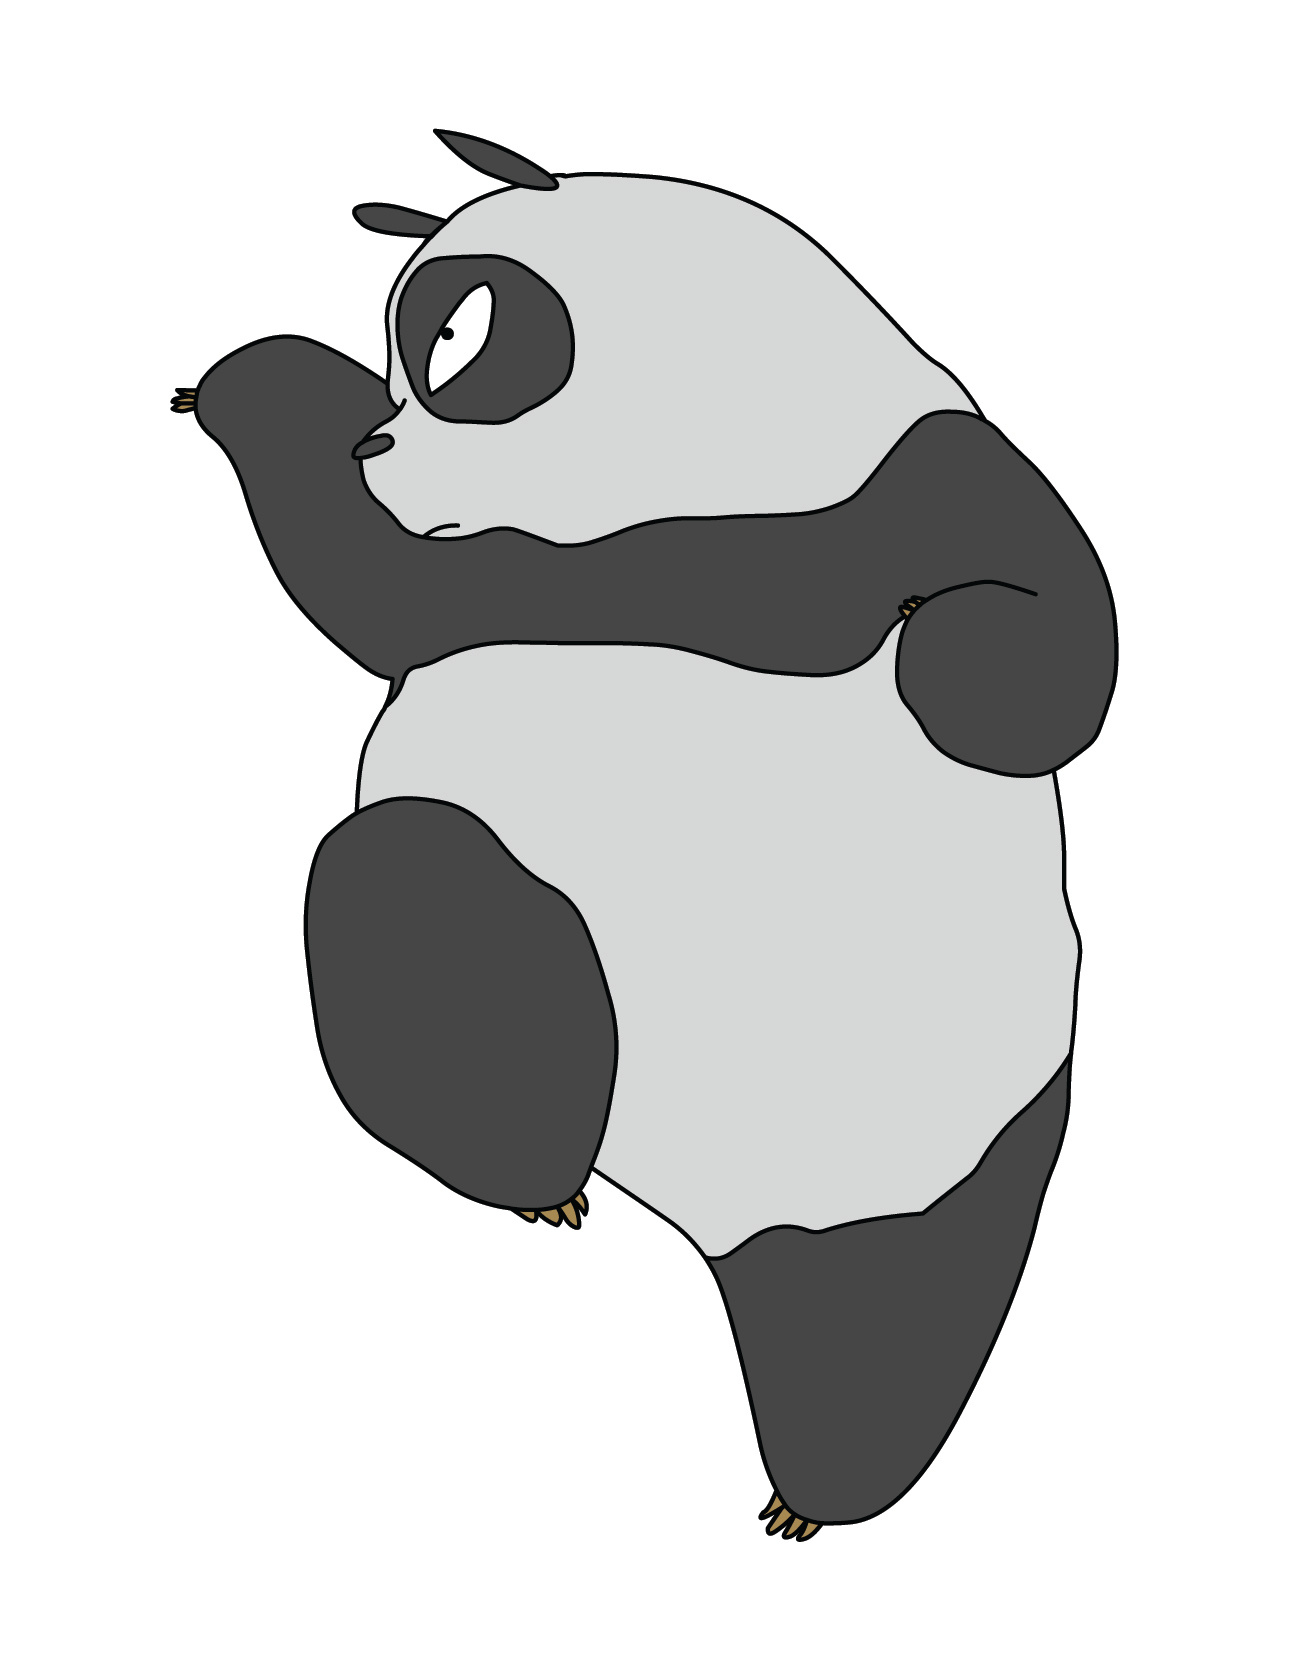 憨态可爱的大熊猫插画图片_动漫卡通_插画绘画-图行天下素材网